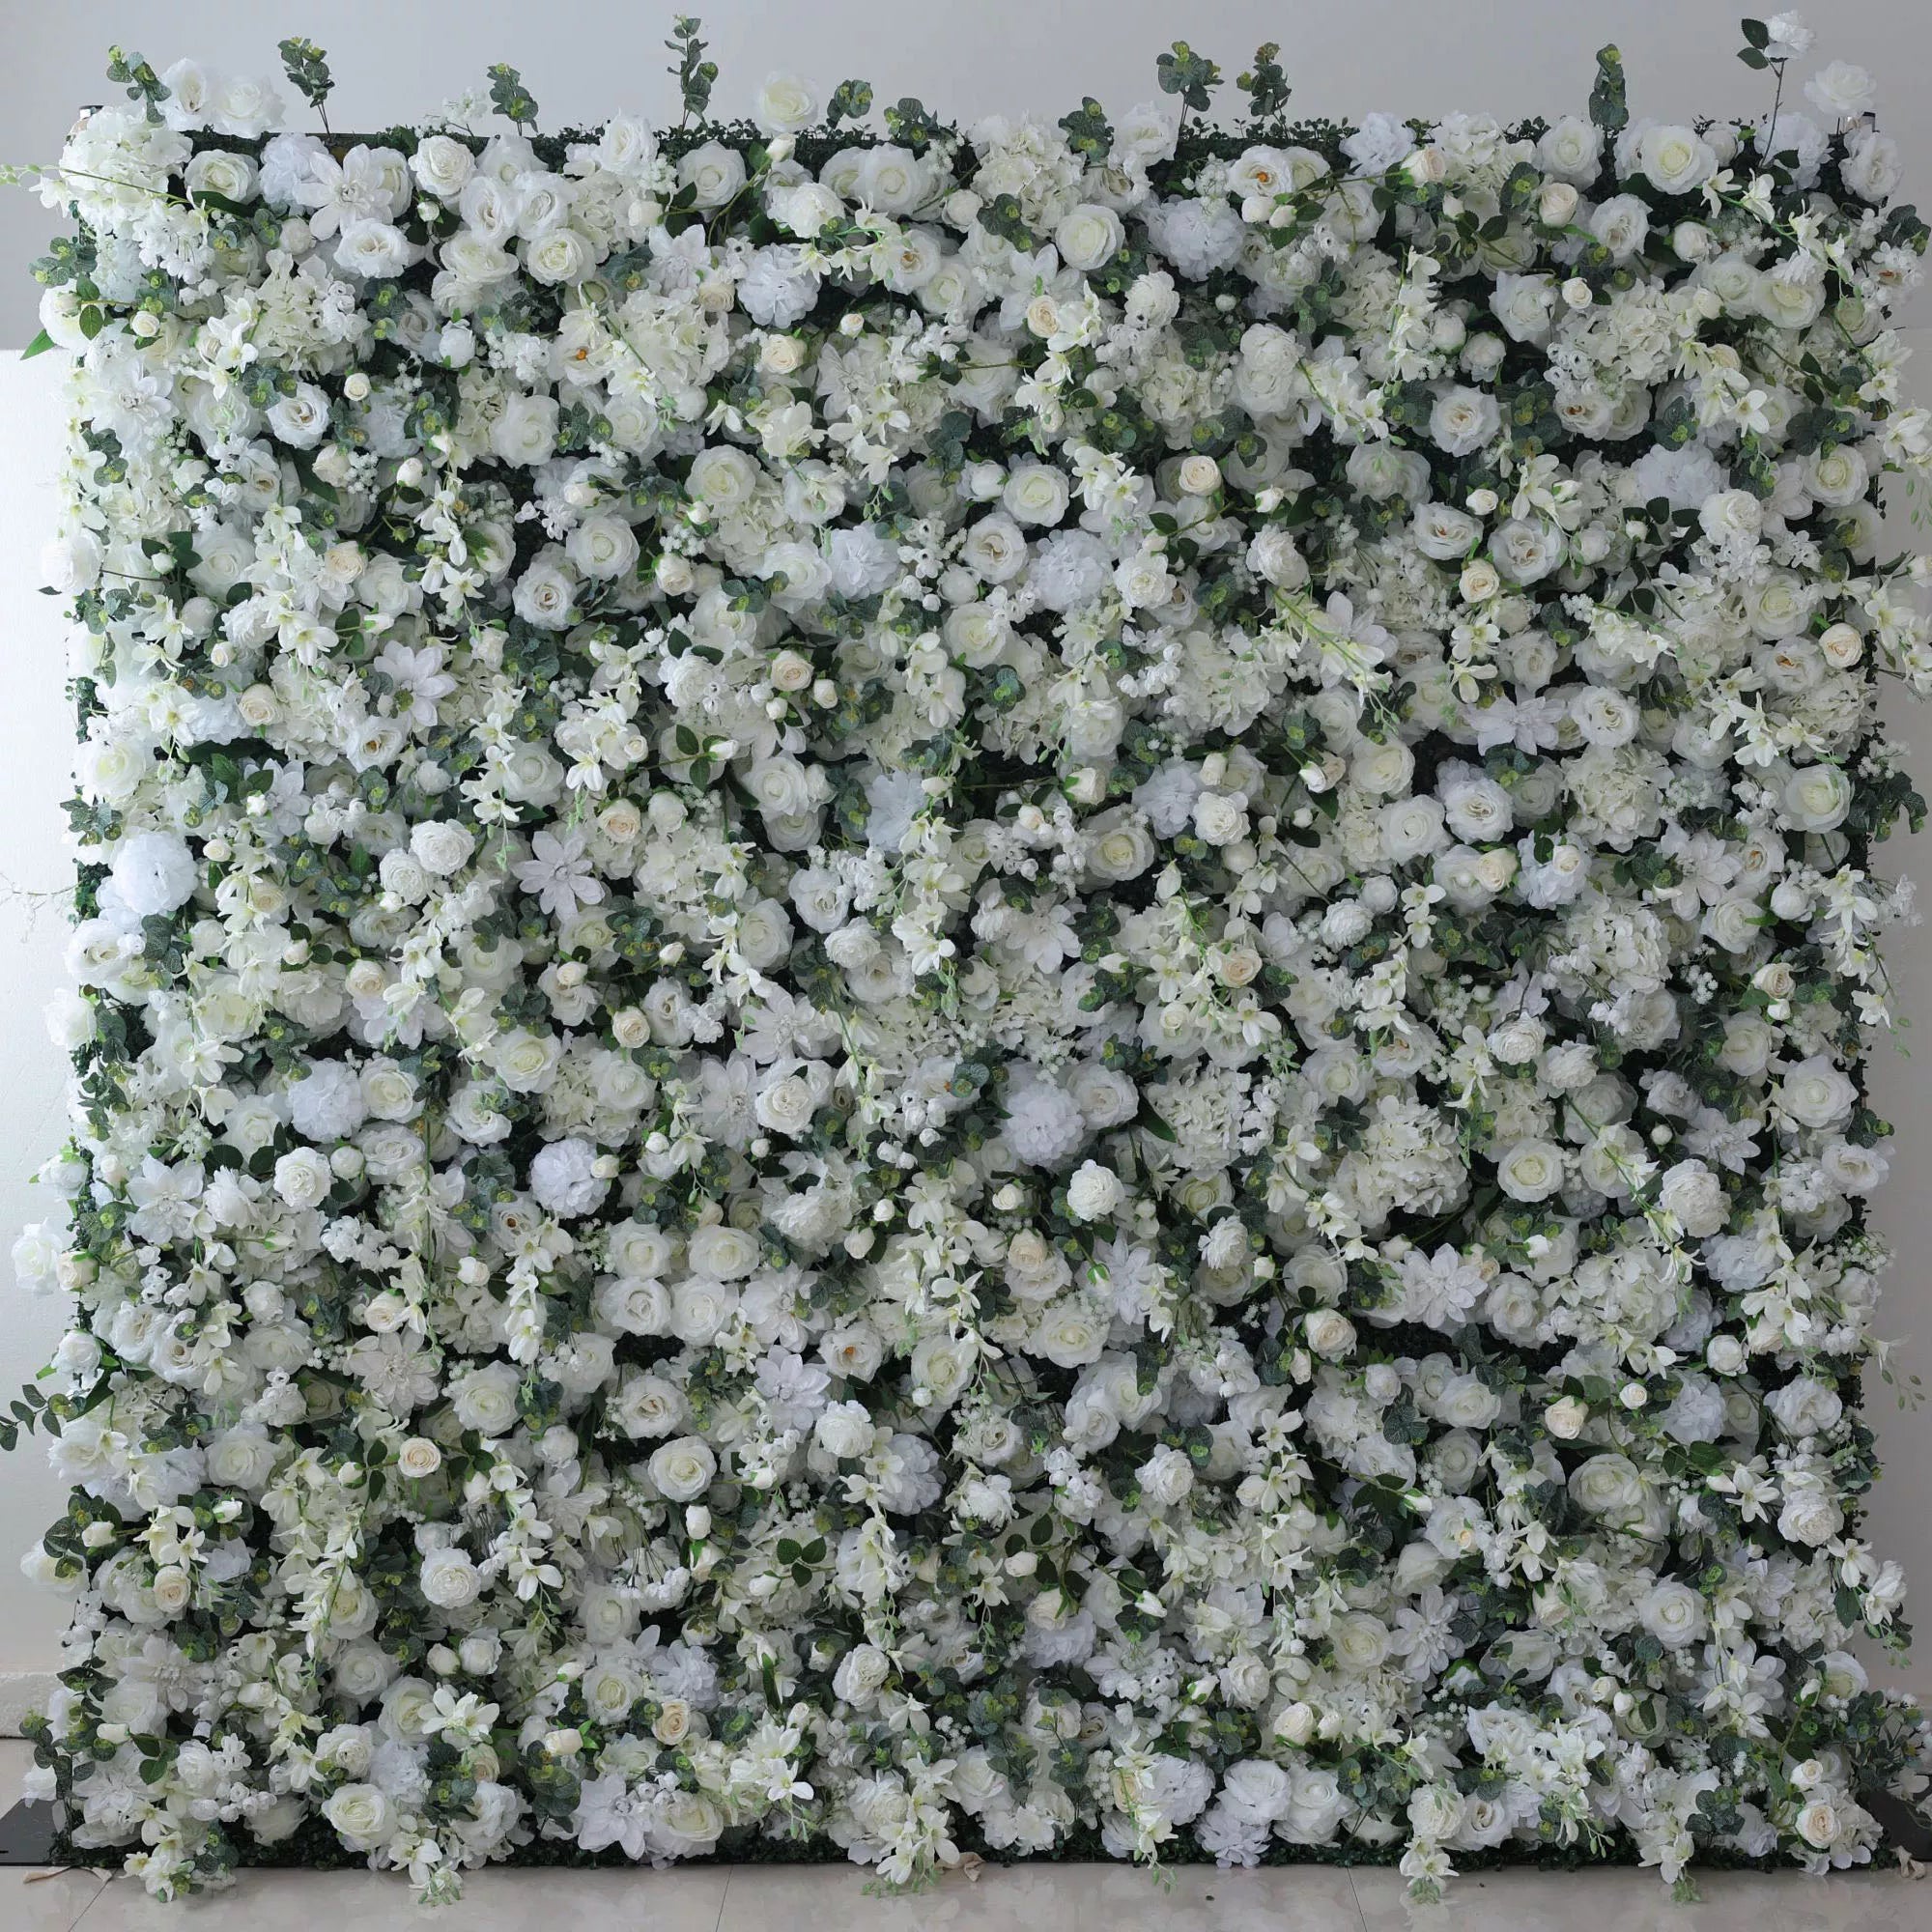 زهور فالار جدار أزهار أبيض أثيري مع لهجات خضراء ناعمة: مثالي للمناسبات الأنيقة &amp; Fall